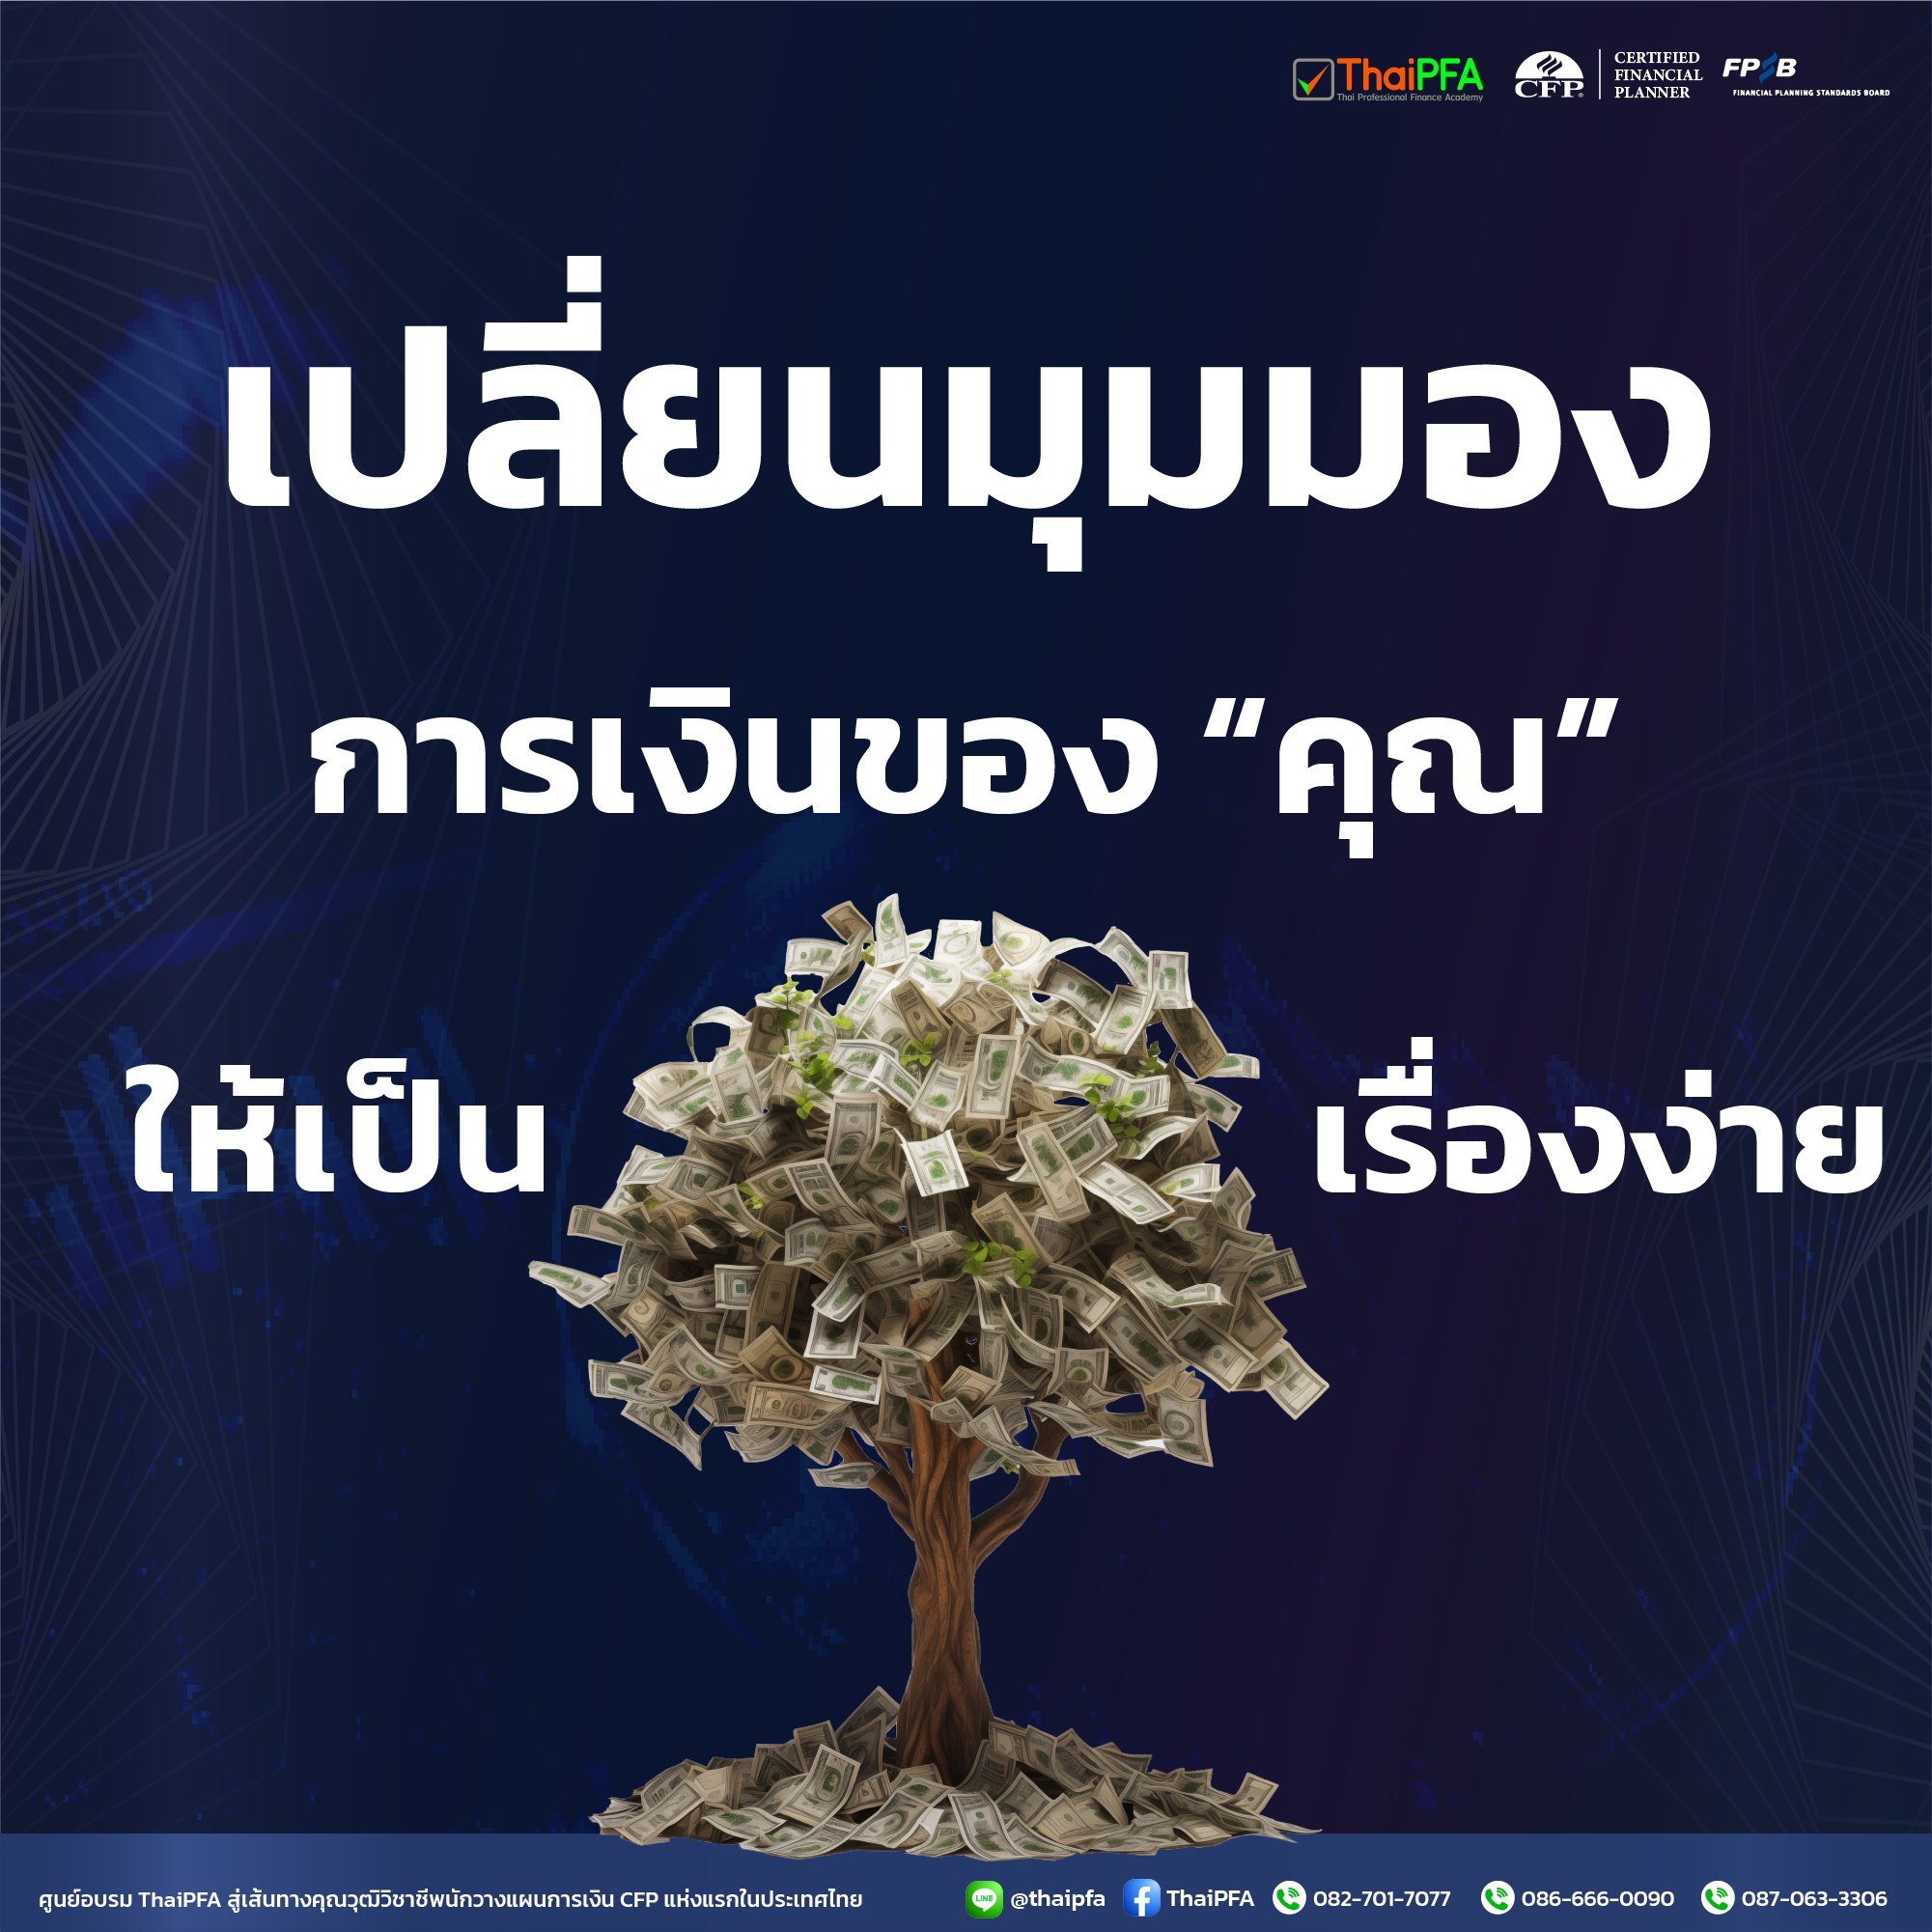 สมัครอบรม Course วางแผนการเงิน CFP  กับ ThaiPFA วันนี้ เพื่อเปลี่ยนการเงินที่ไร้ทิศทางไปสู่อนาคตที่มั่งคั่งและมั่นคง 